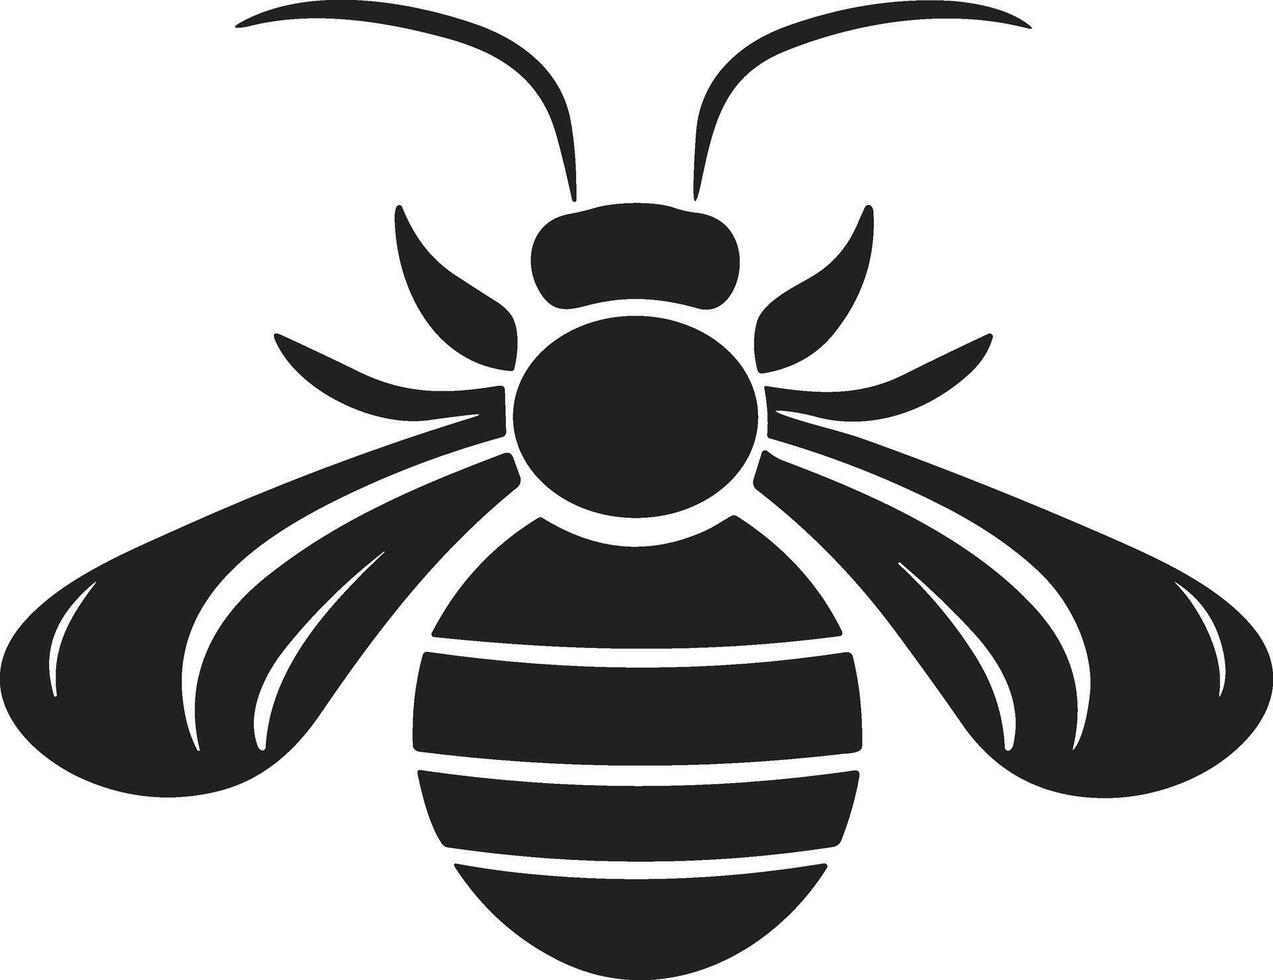 bin och bikakor logotyp eller bricka i årgång stil vektor